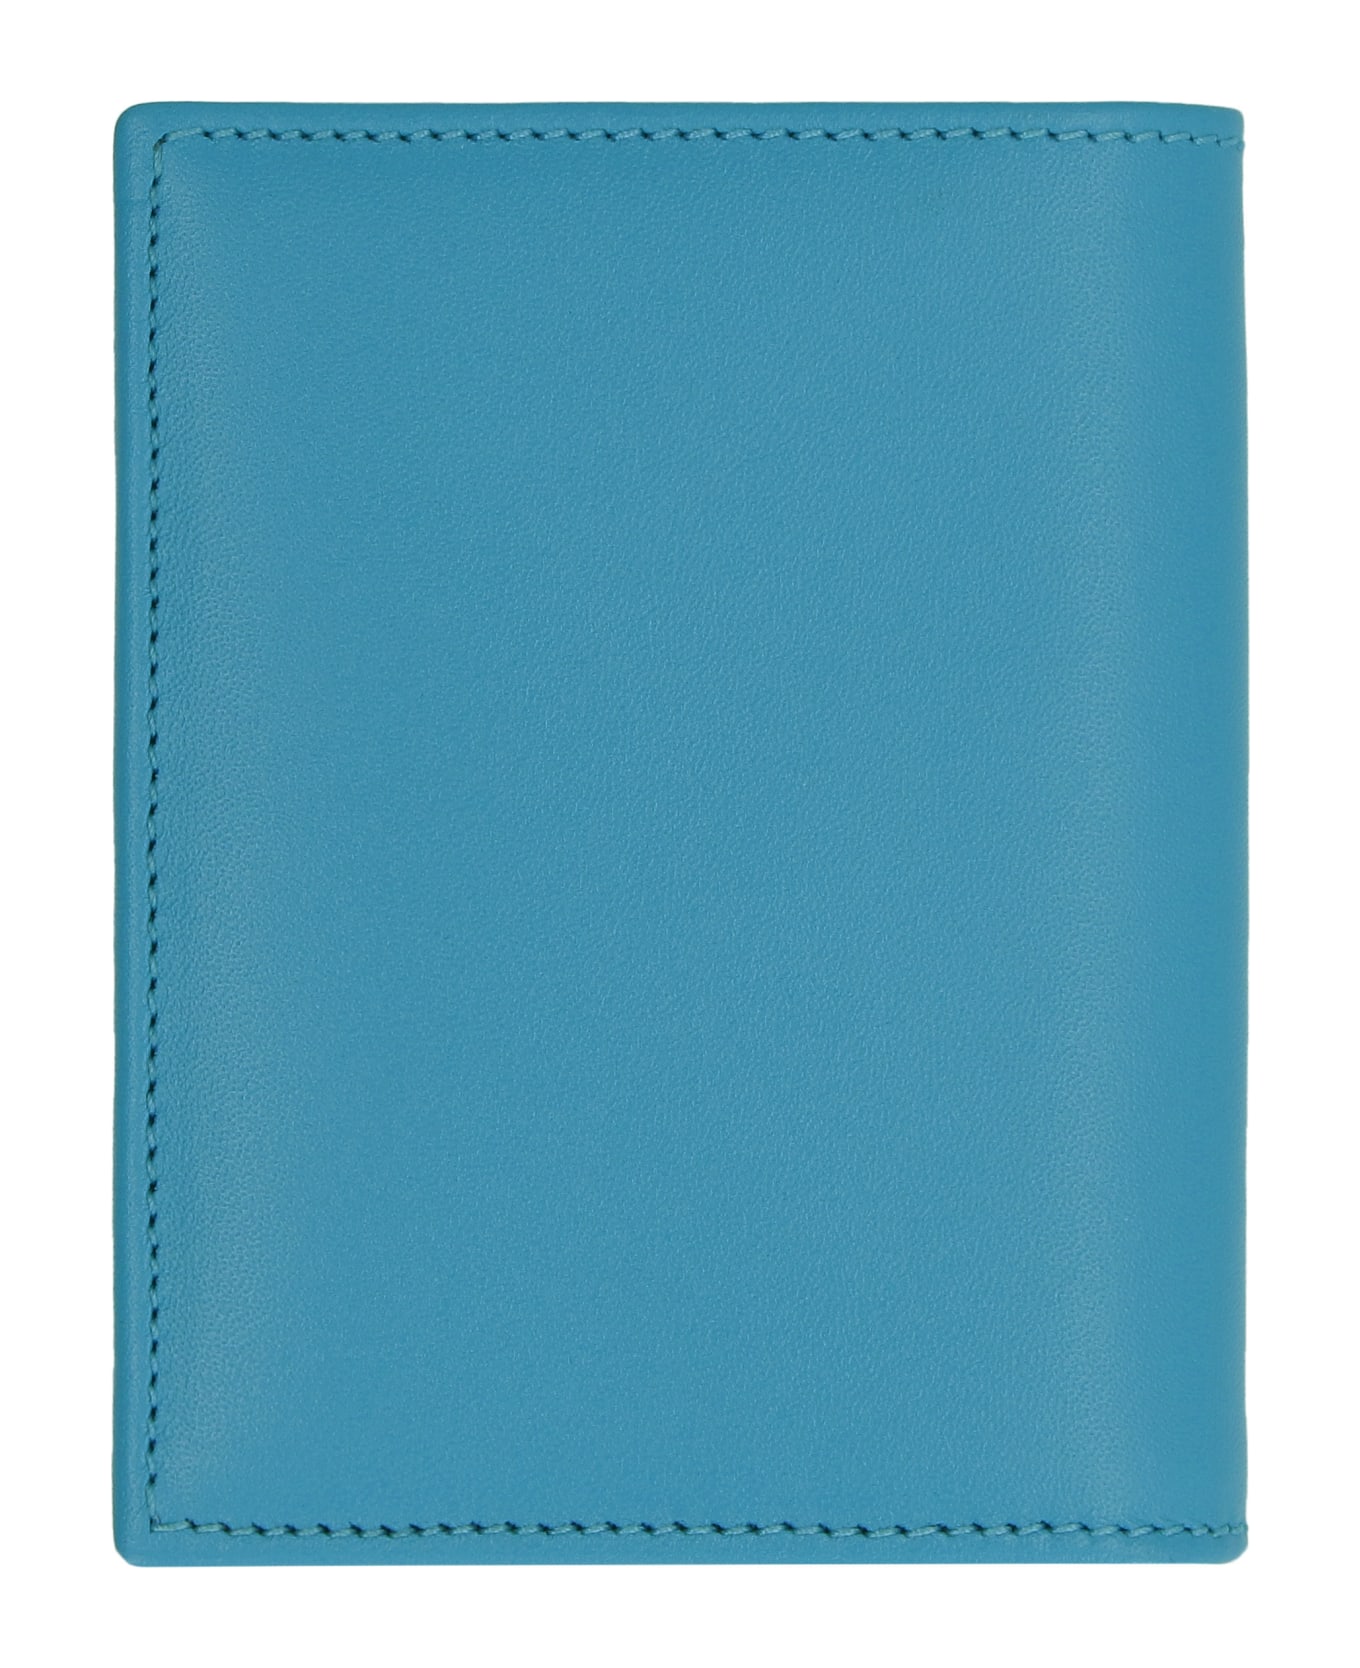 Comme des Garçons Wallet Leather Card Holder - Light Blue